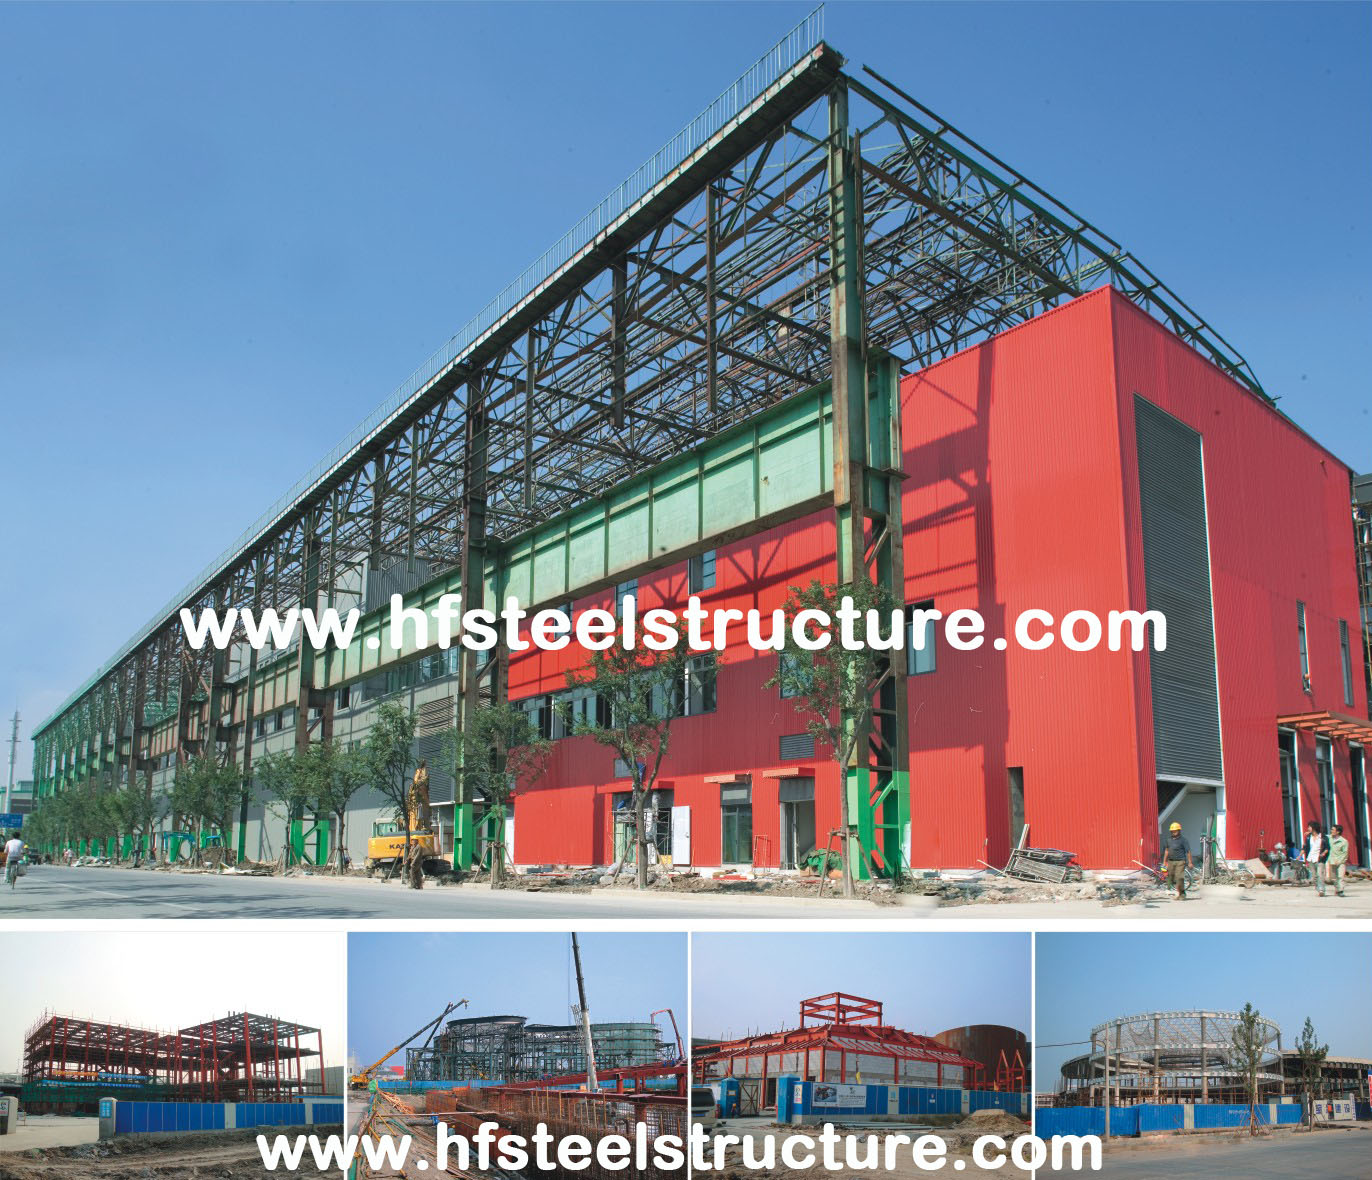 OEM Prefabricated Welding,Braking, Rolling And Painting Metal Commercial Steel Buildings